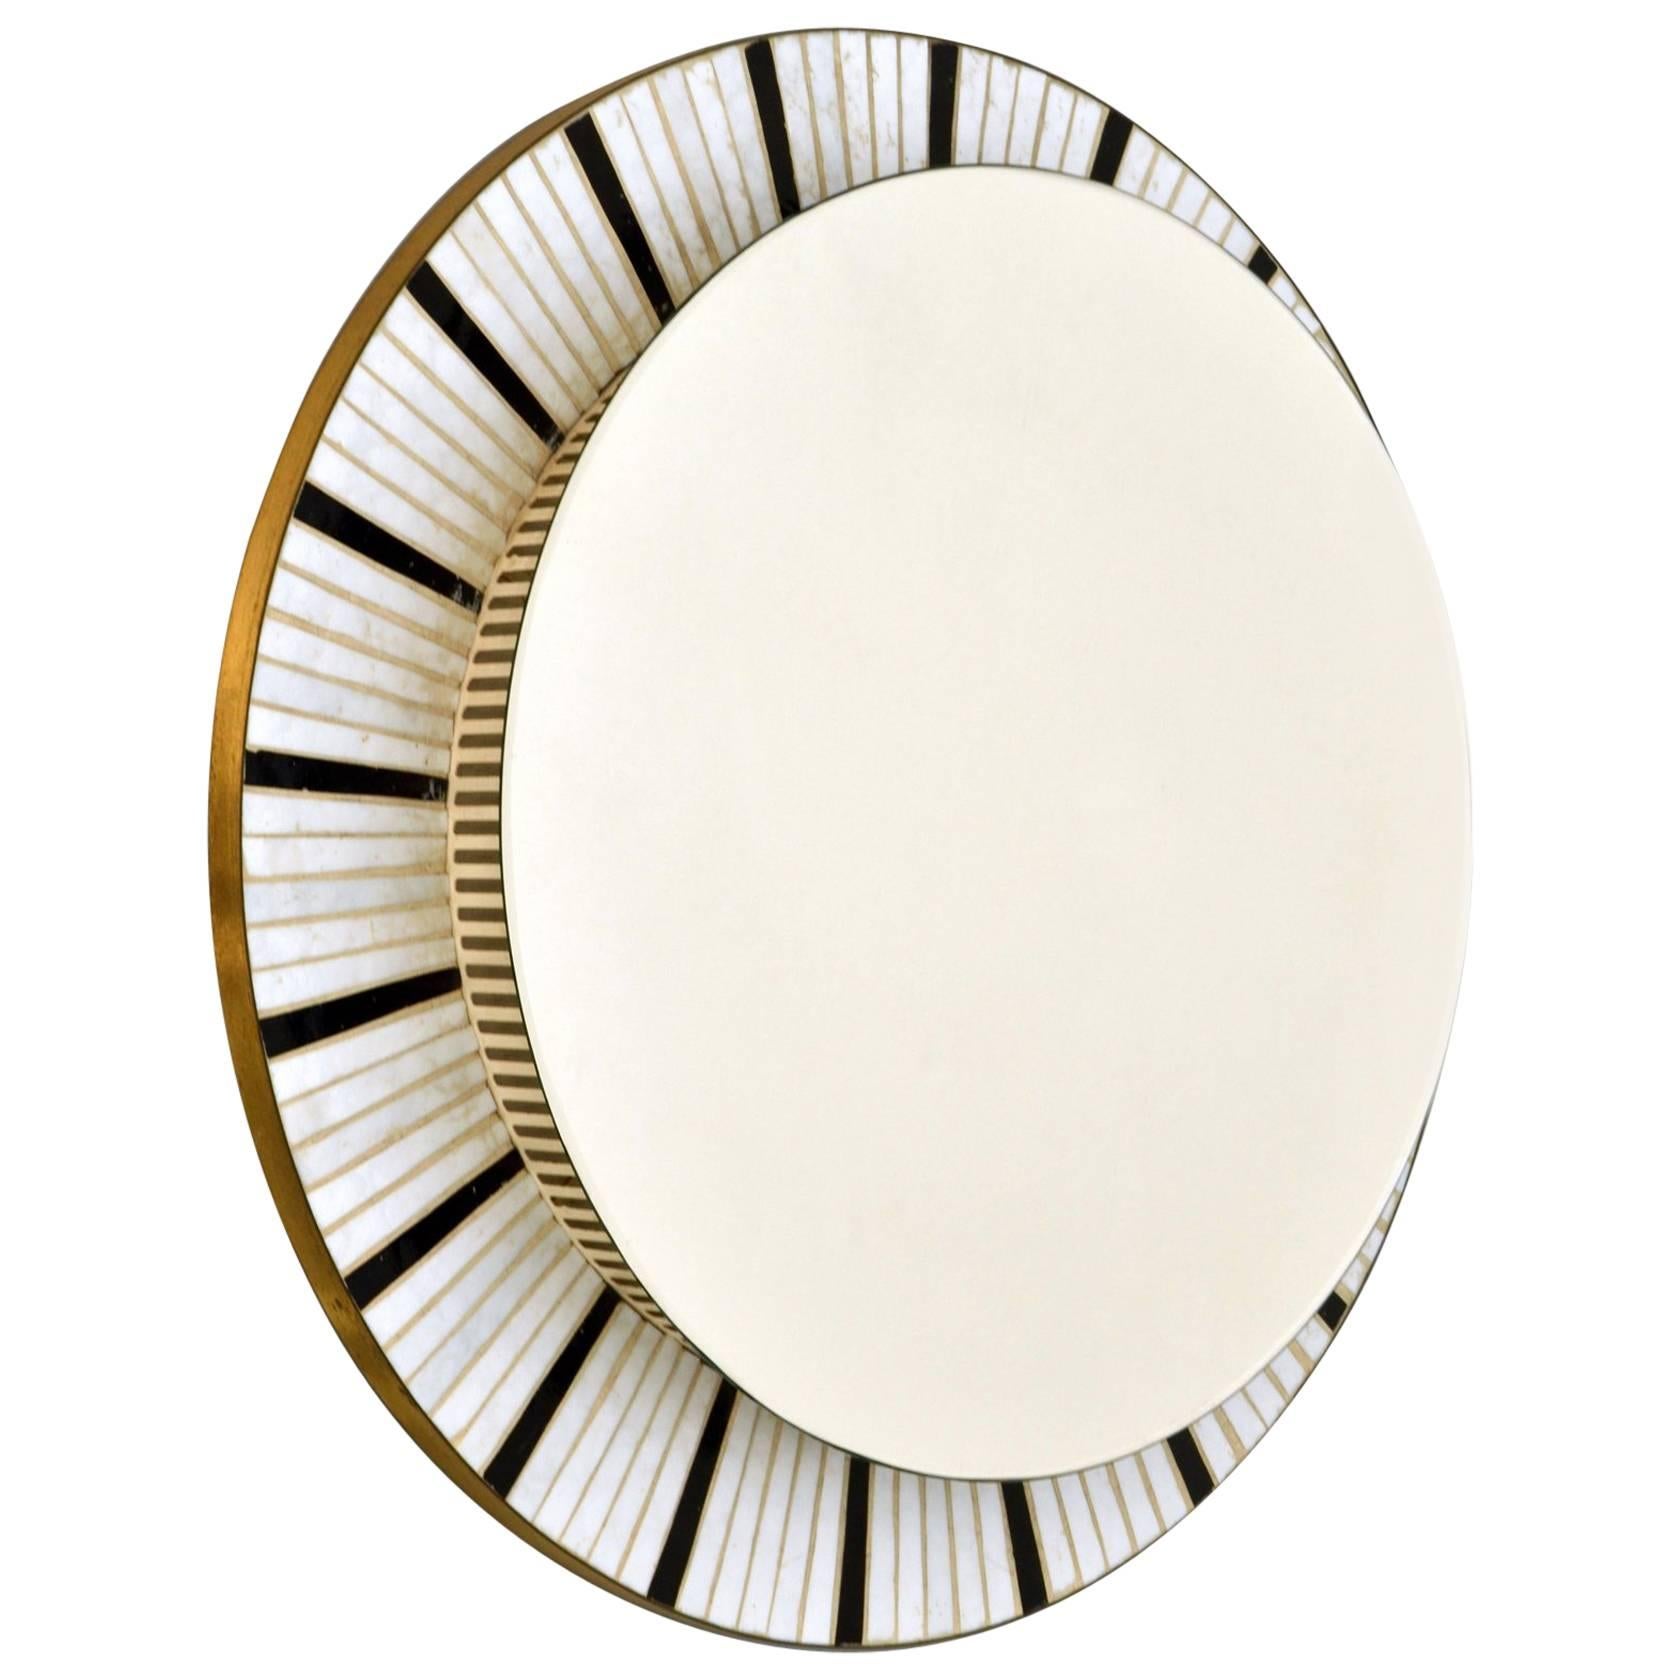 1960s Illuminated Round Mirror Edged with Black and White Mosaic